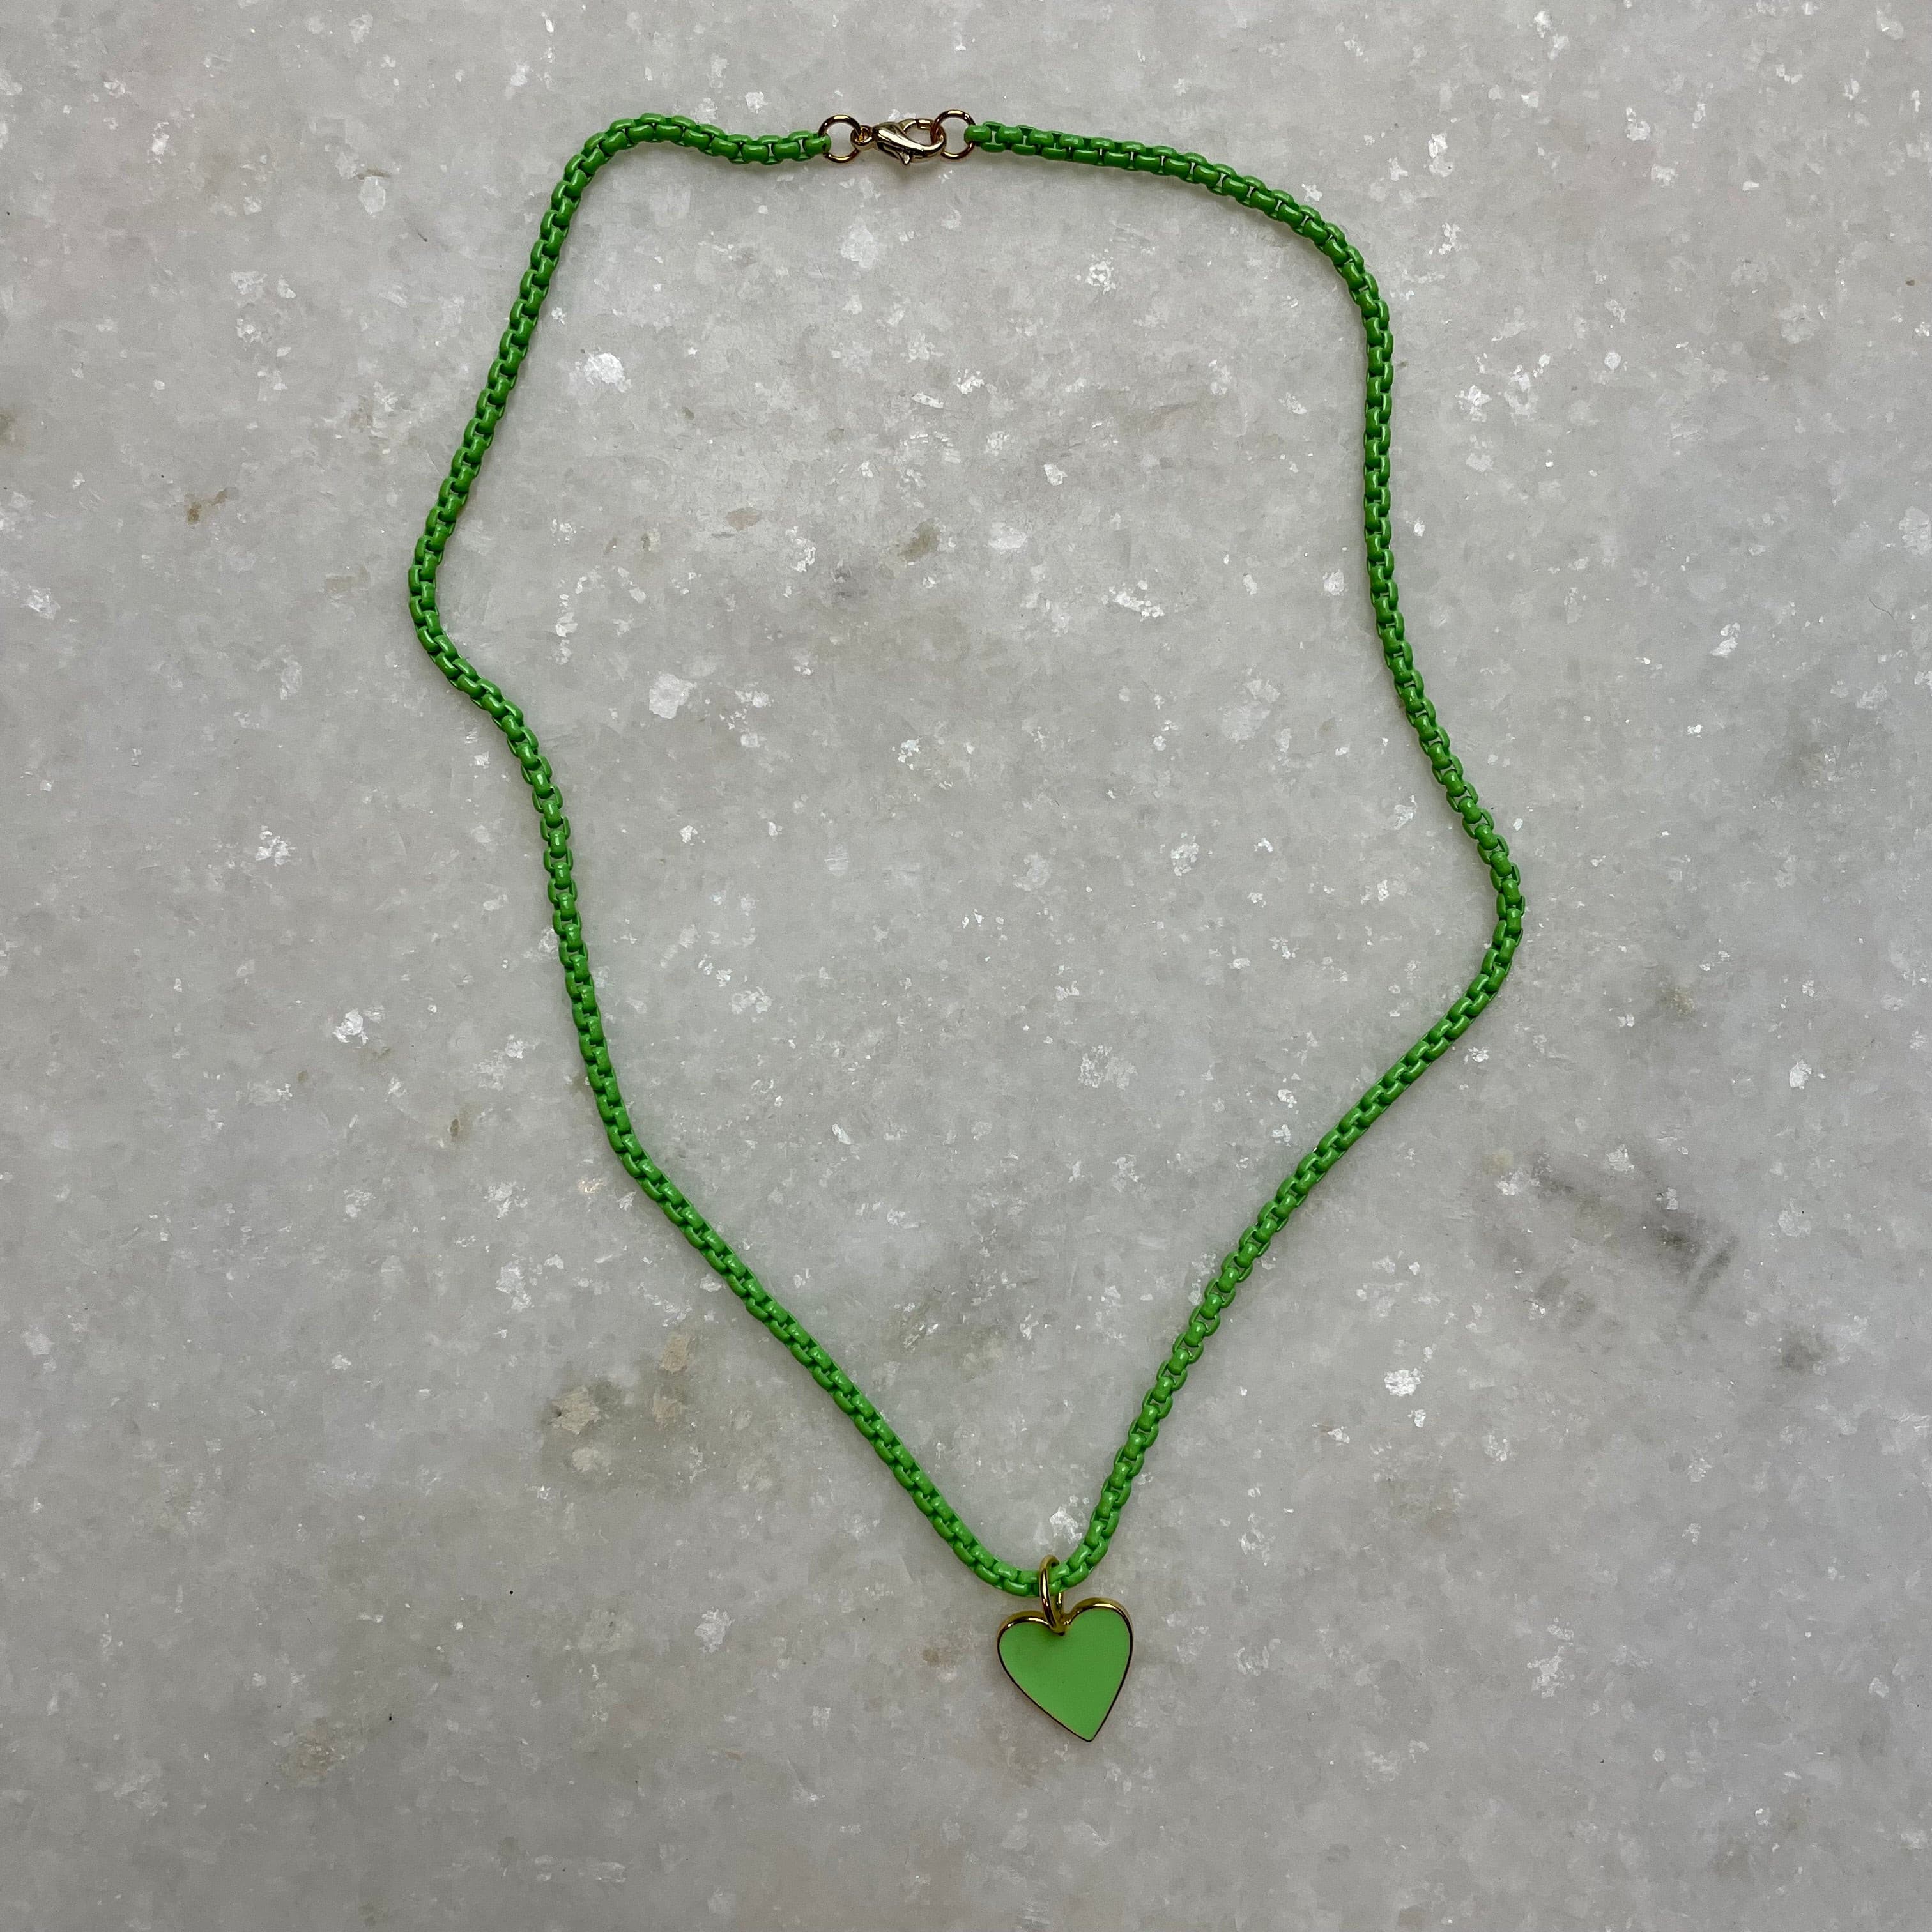 Green Enamel Necklace w/Heart Charm.